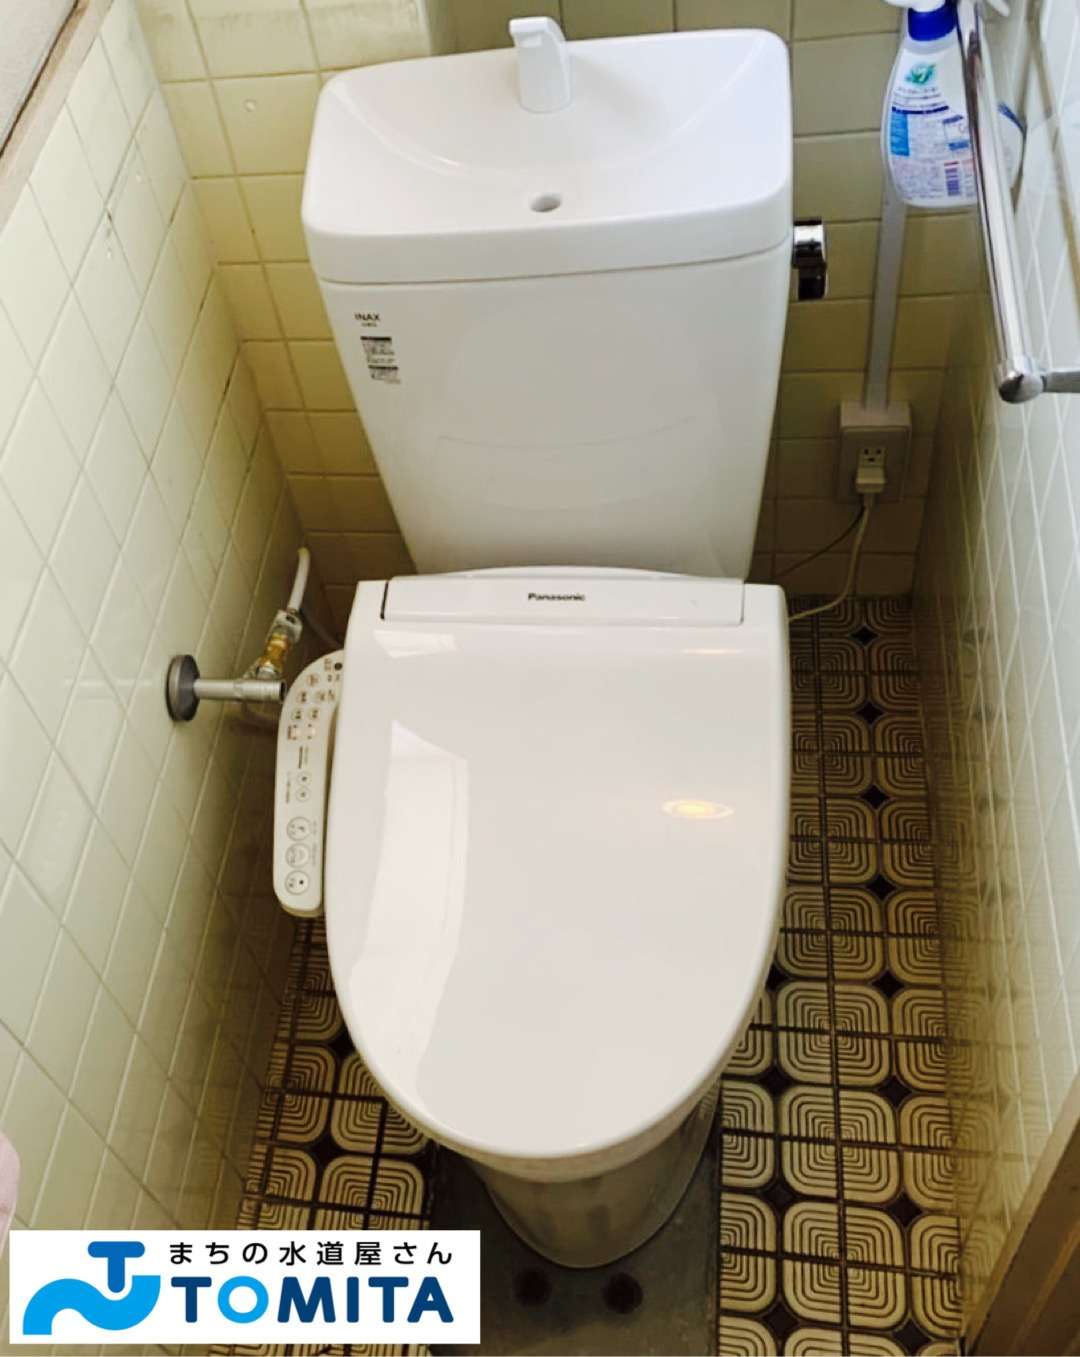 【交換後】新しい綺麗なトイレです。既存の和式のトイレから洋式トイレへの交換です。